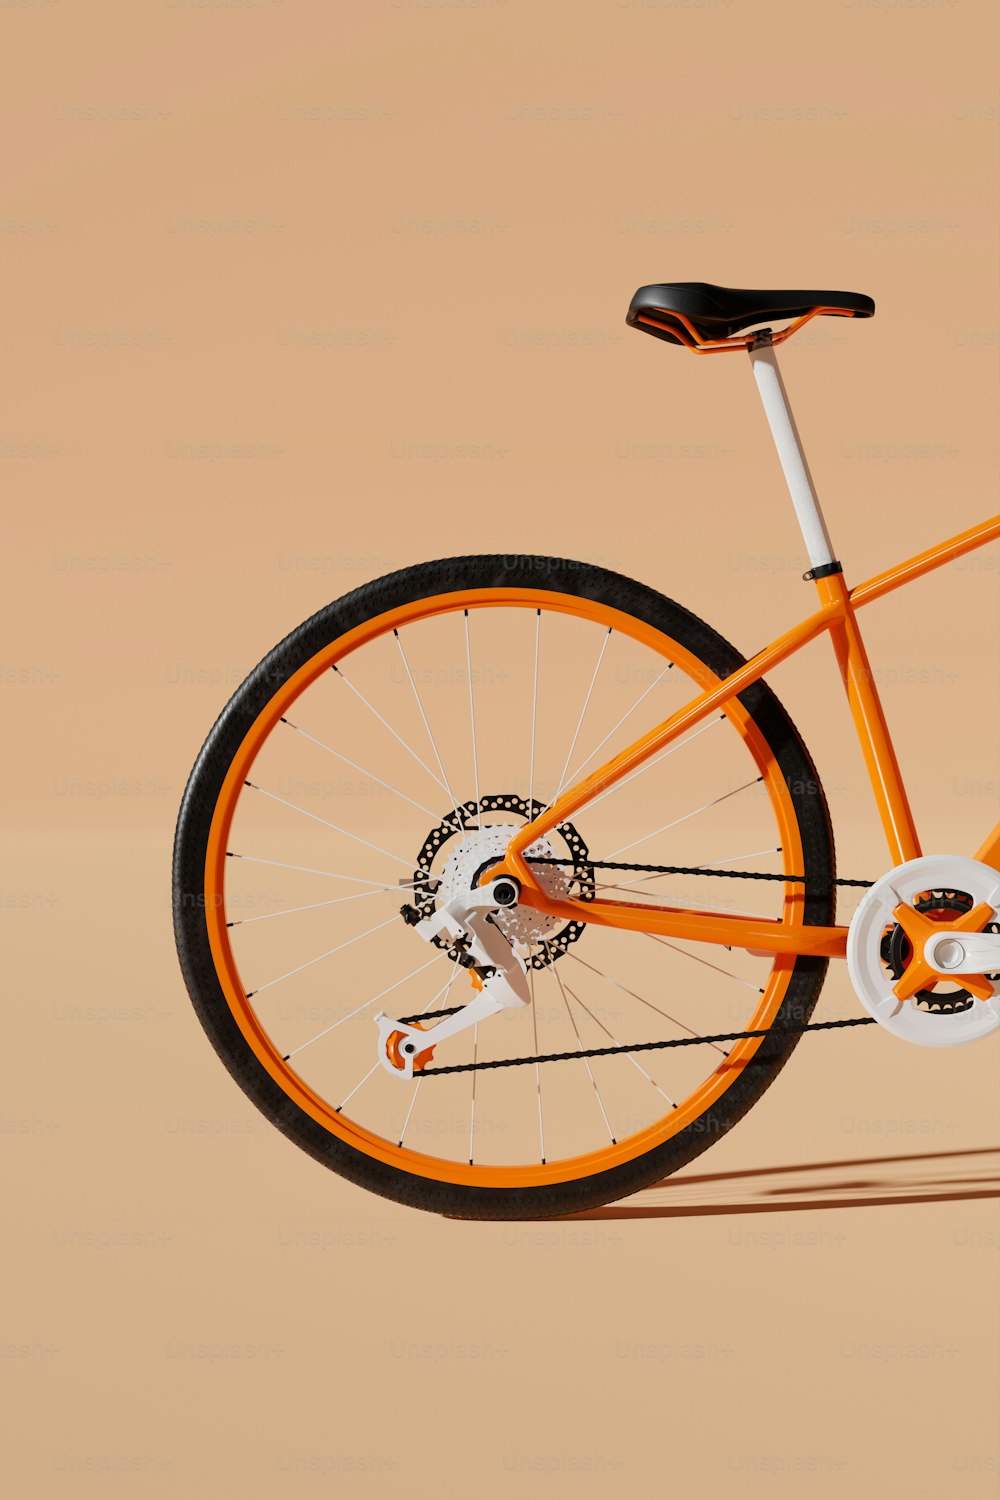 Un vélo orange et blanc est représenté sur un fond beige